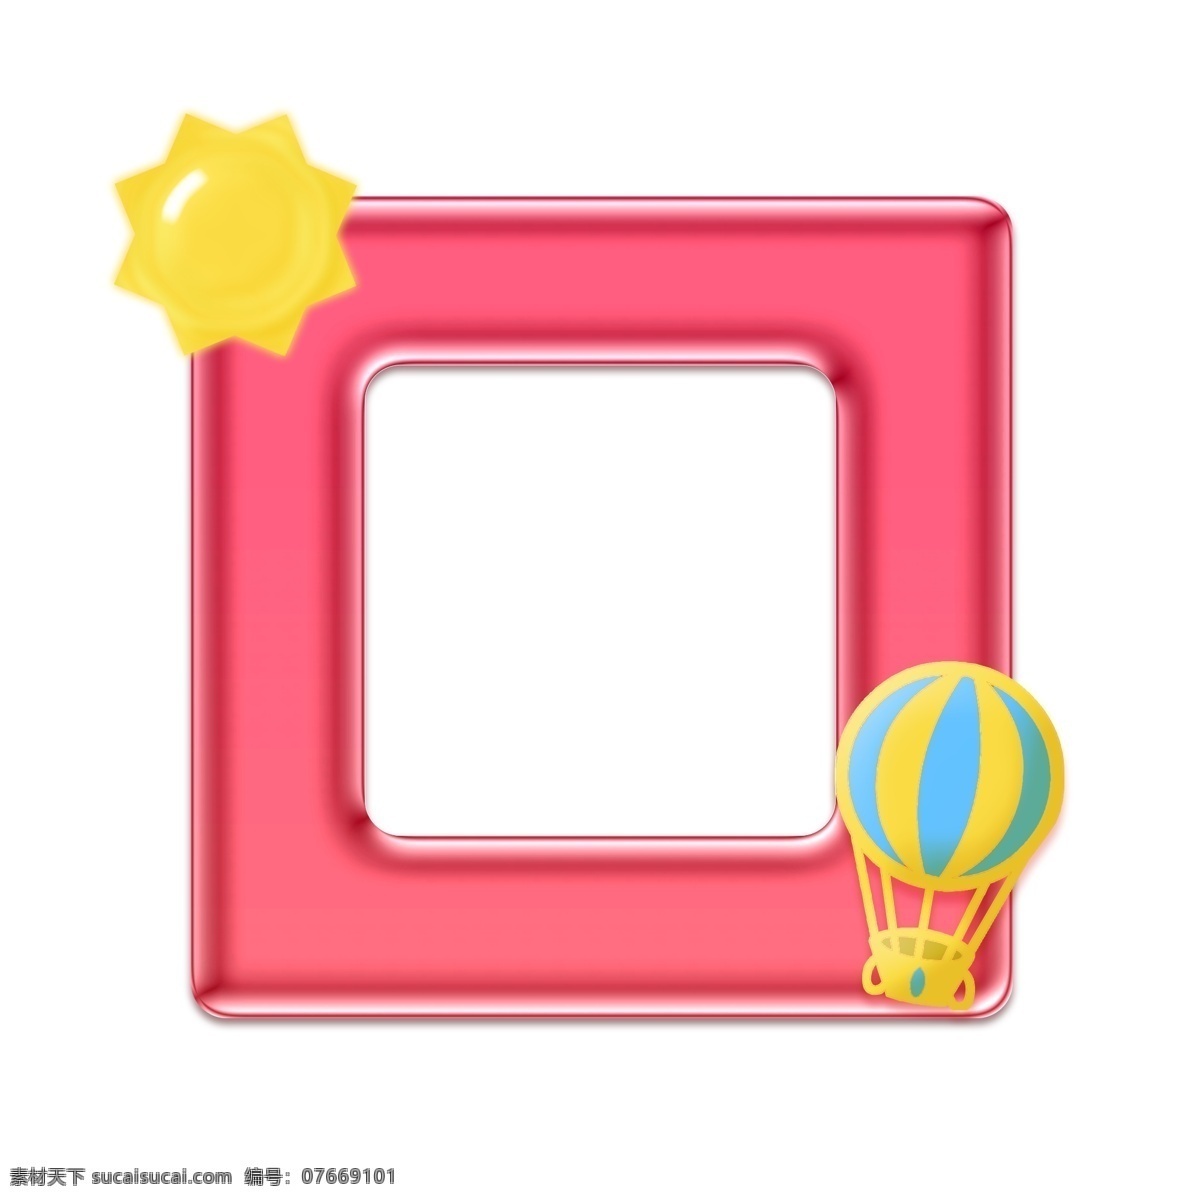 粉红 糖果 色 水晶 立体 相框 二维码 边框 立体边框 水晶边框 卡通边框 糖果色相框 冰淇淋 边框设计 粉红立体相框 质感